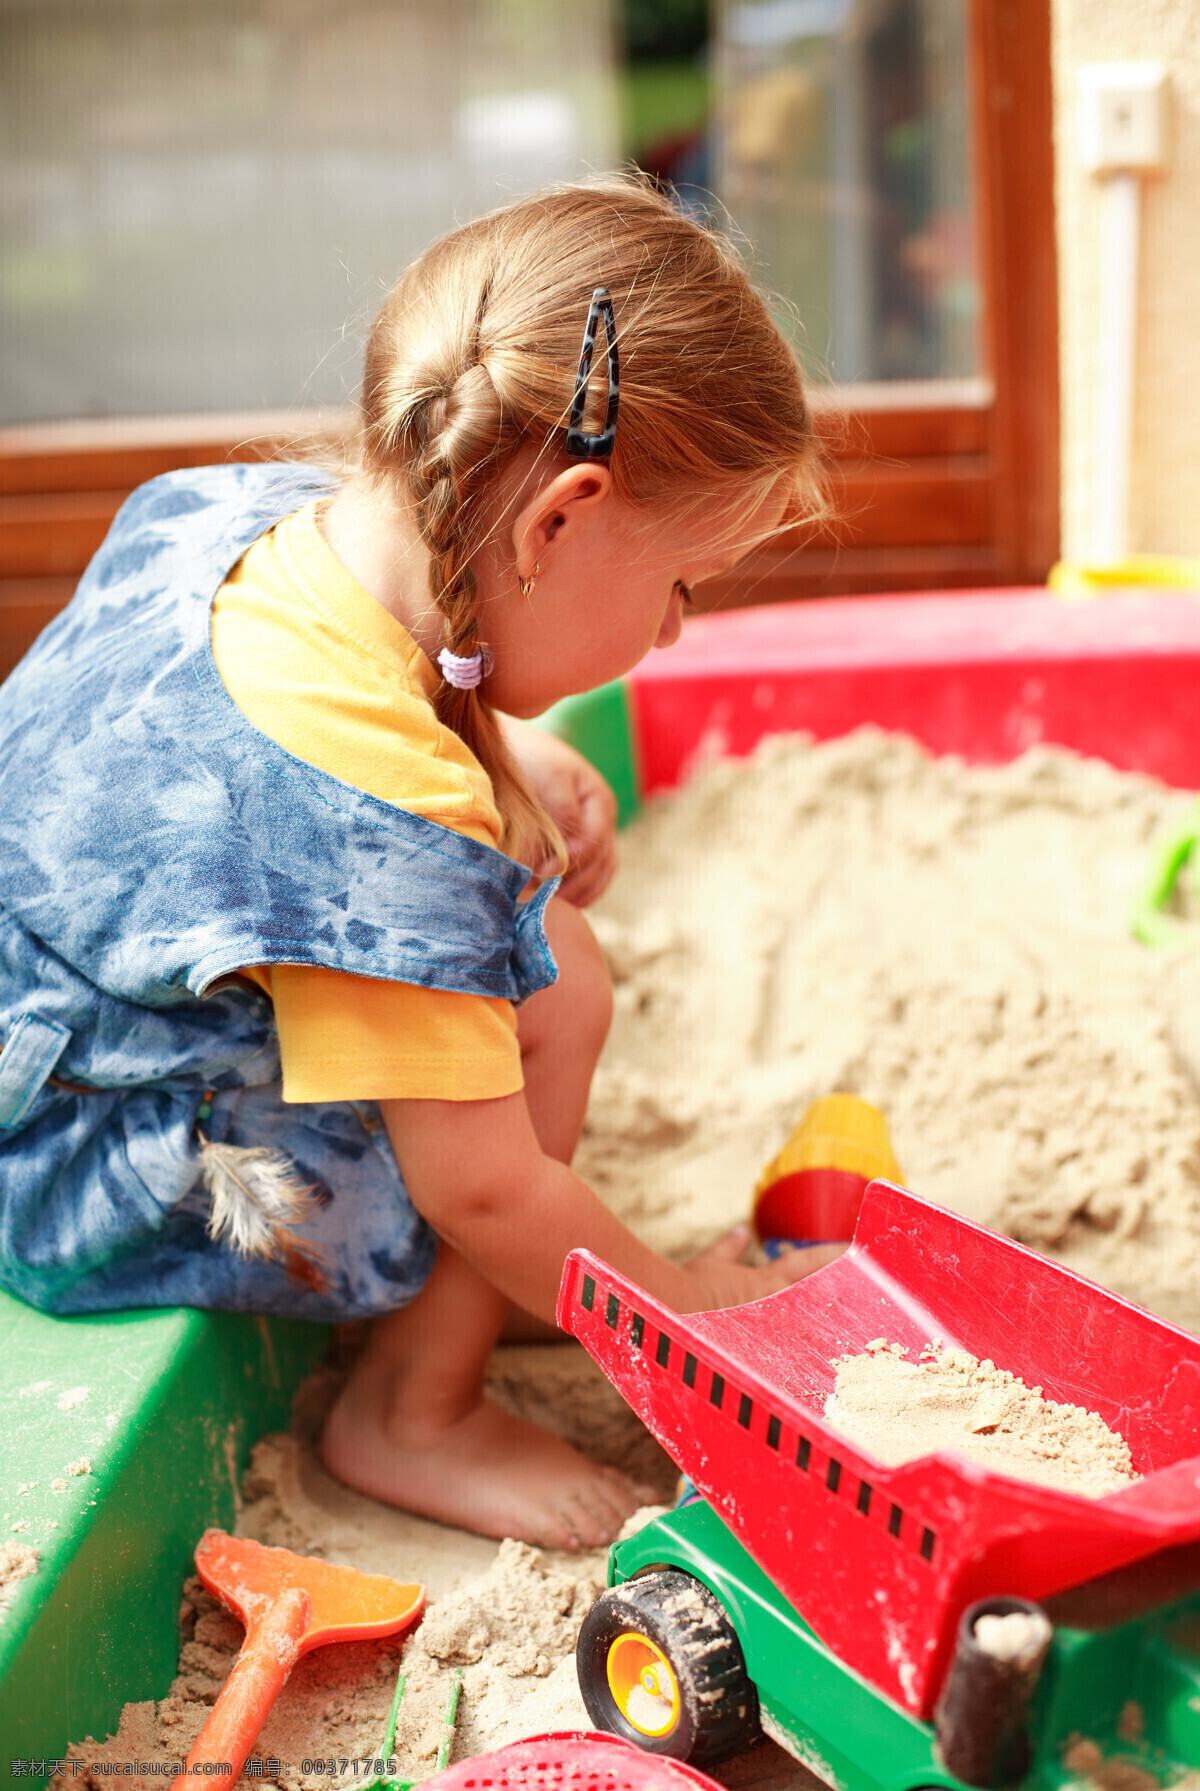 正在 玩耍 小孩 人物 开心 微笑 玩沙子 儿童图片 人物图片